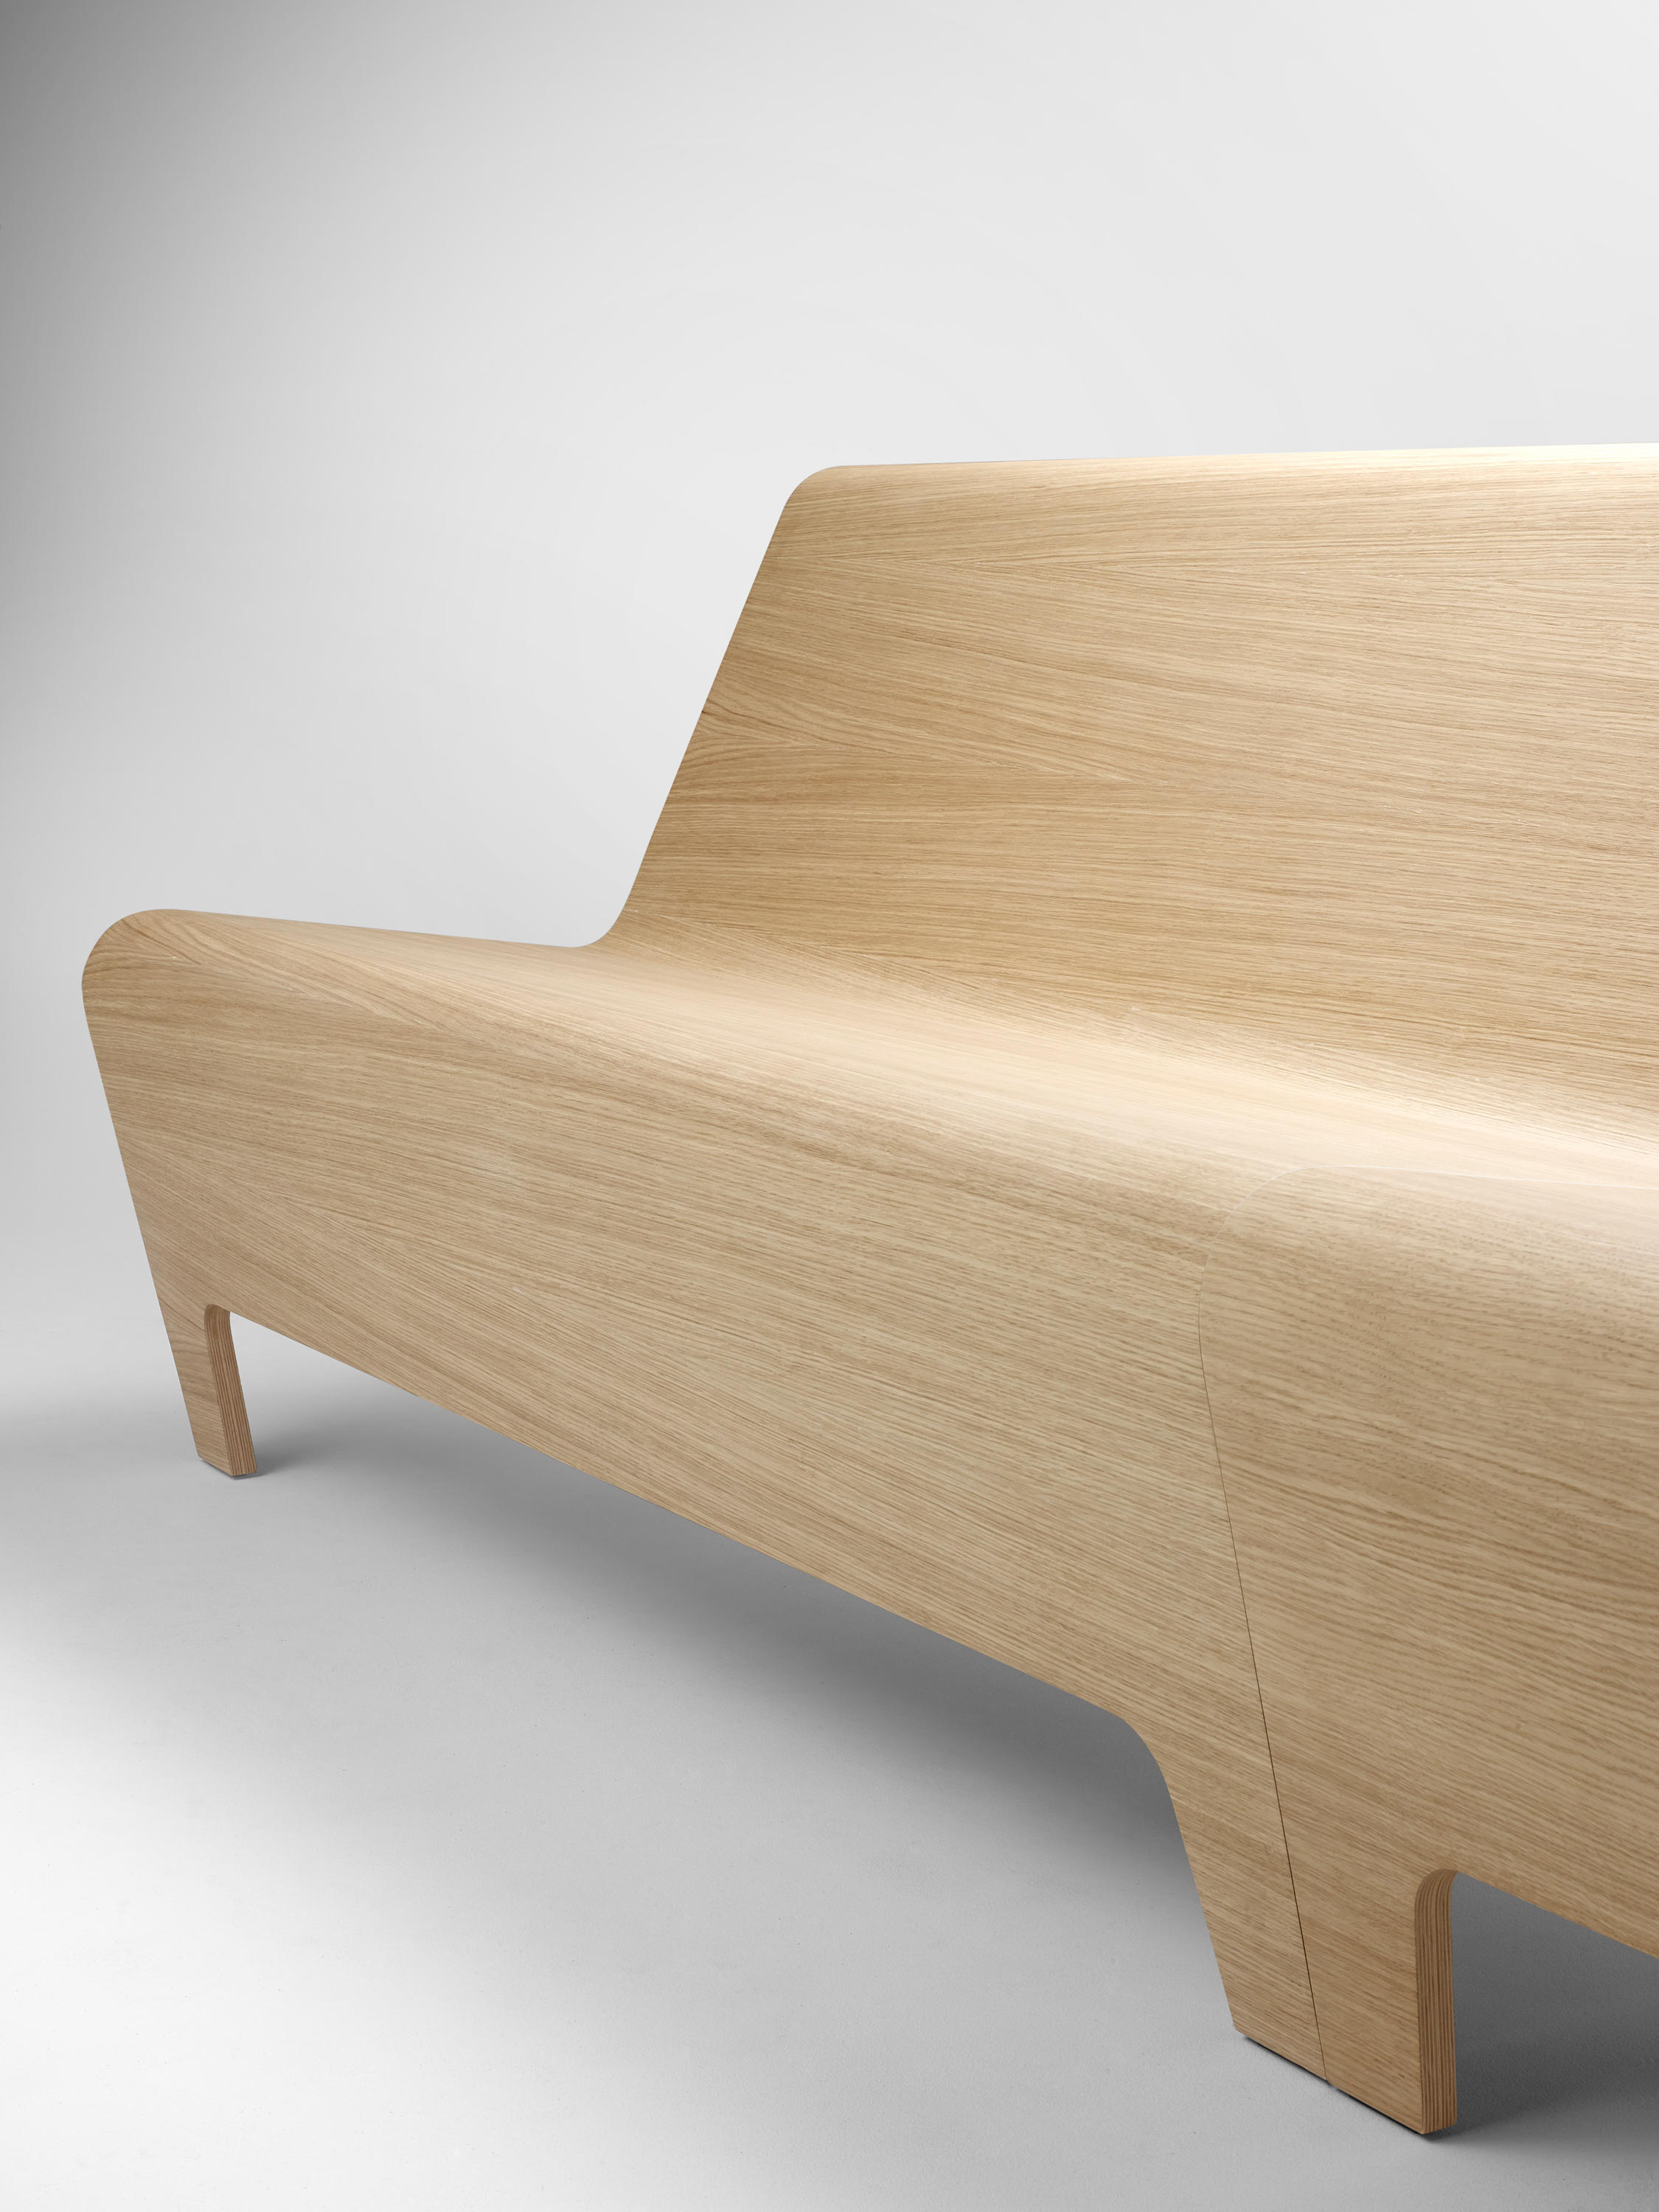 Back Modular Seating Designer Furniture Architonic